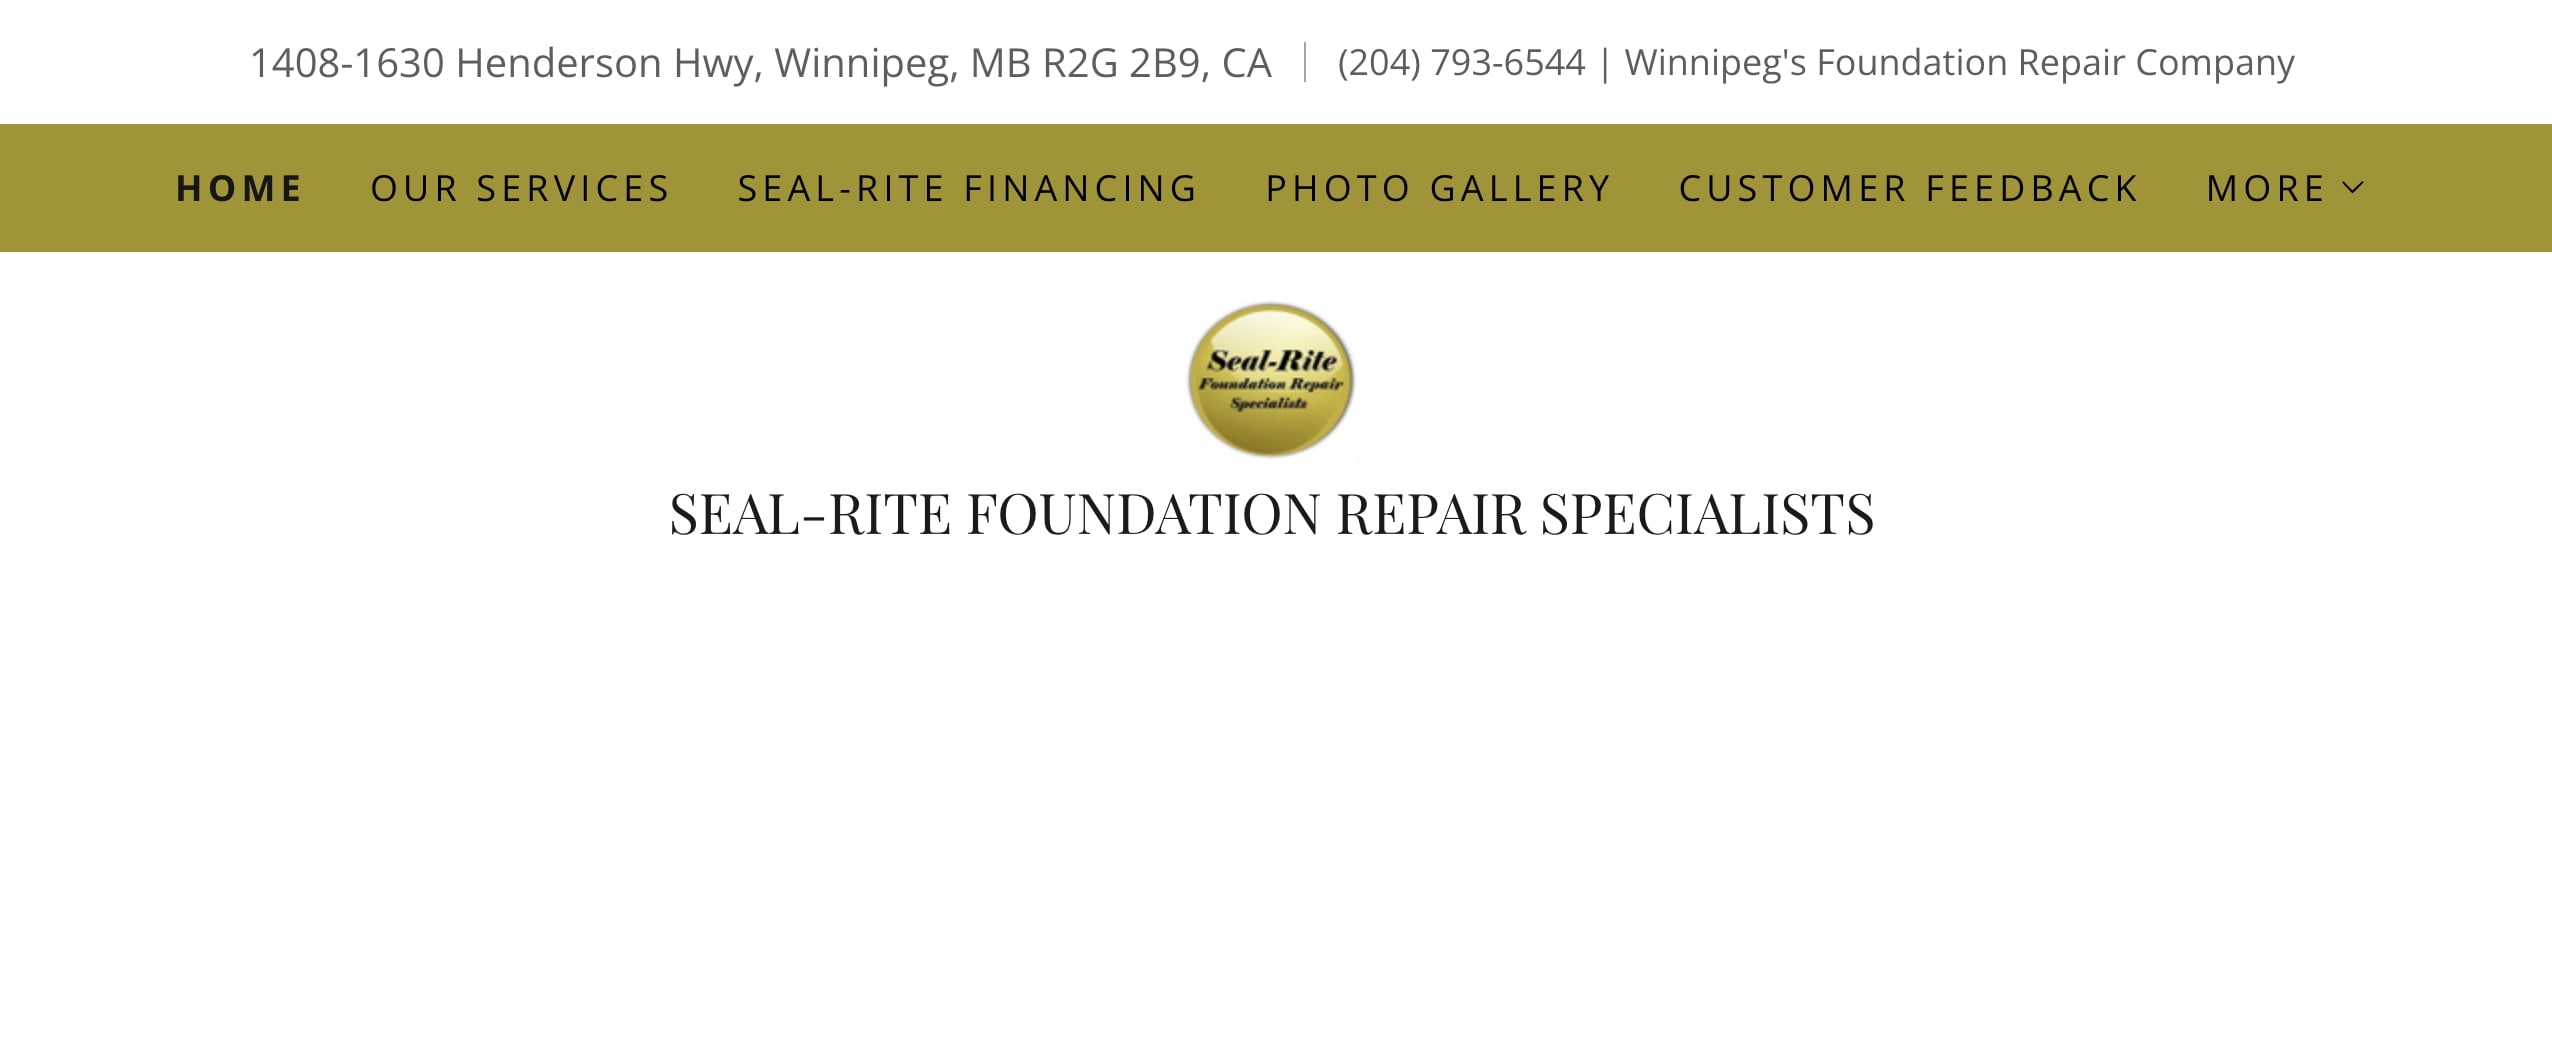 Seal-Rite Foundation Repair